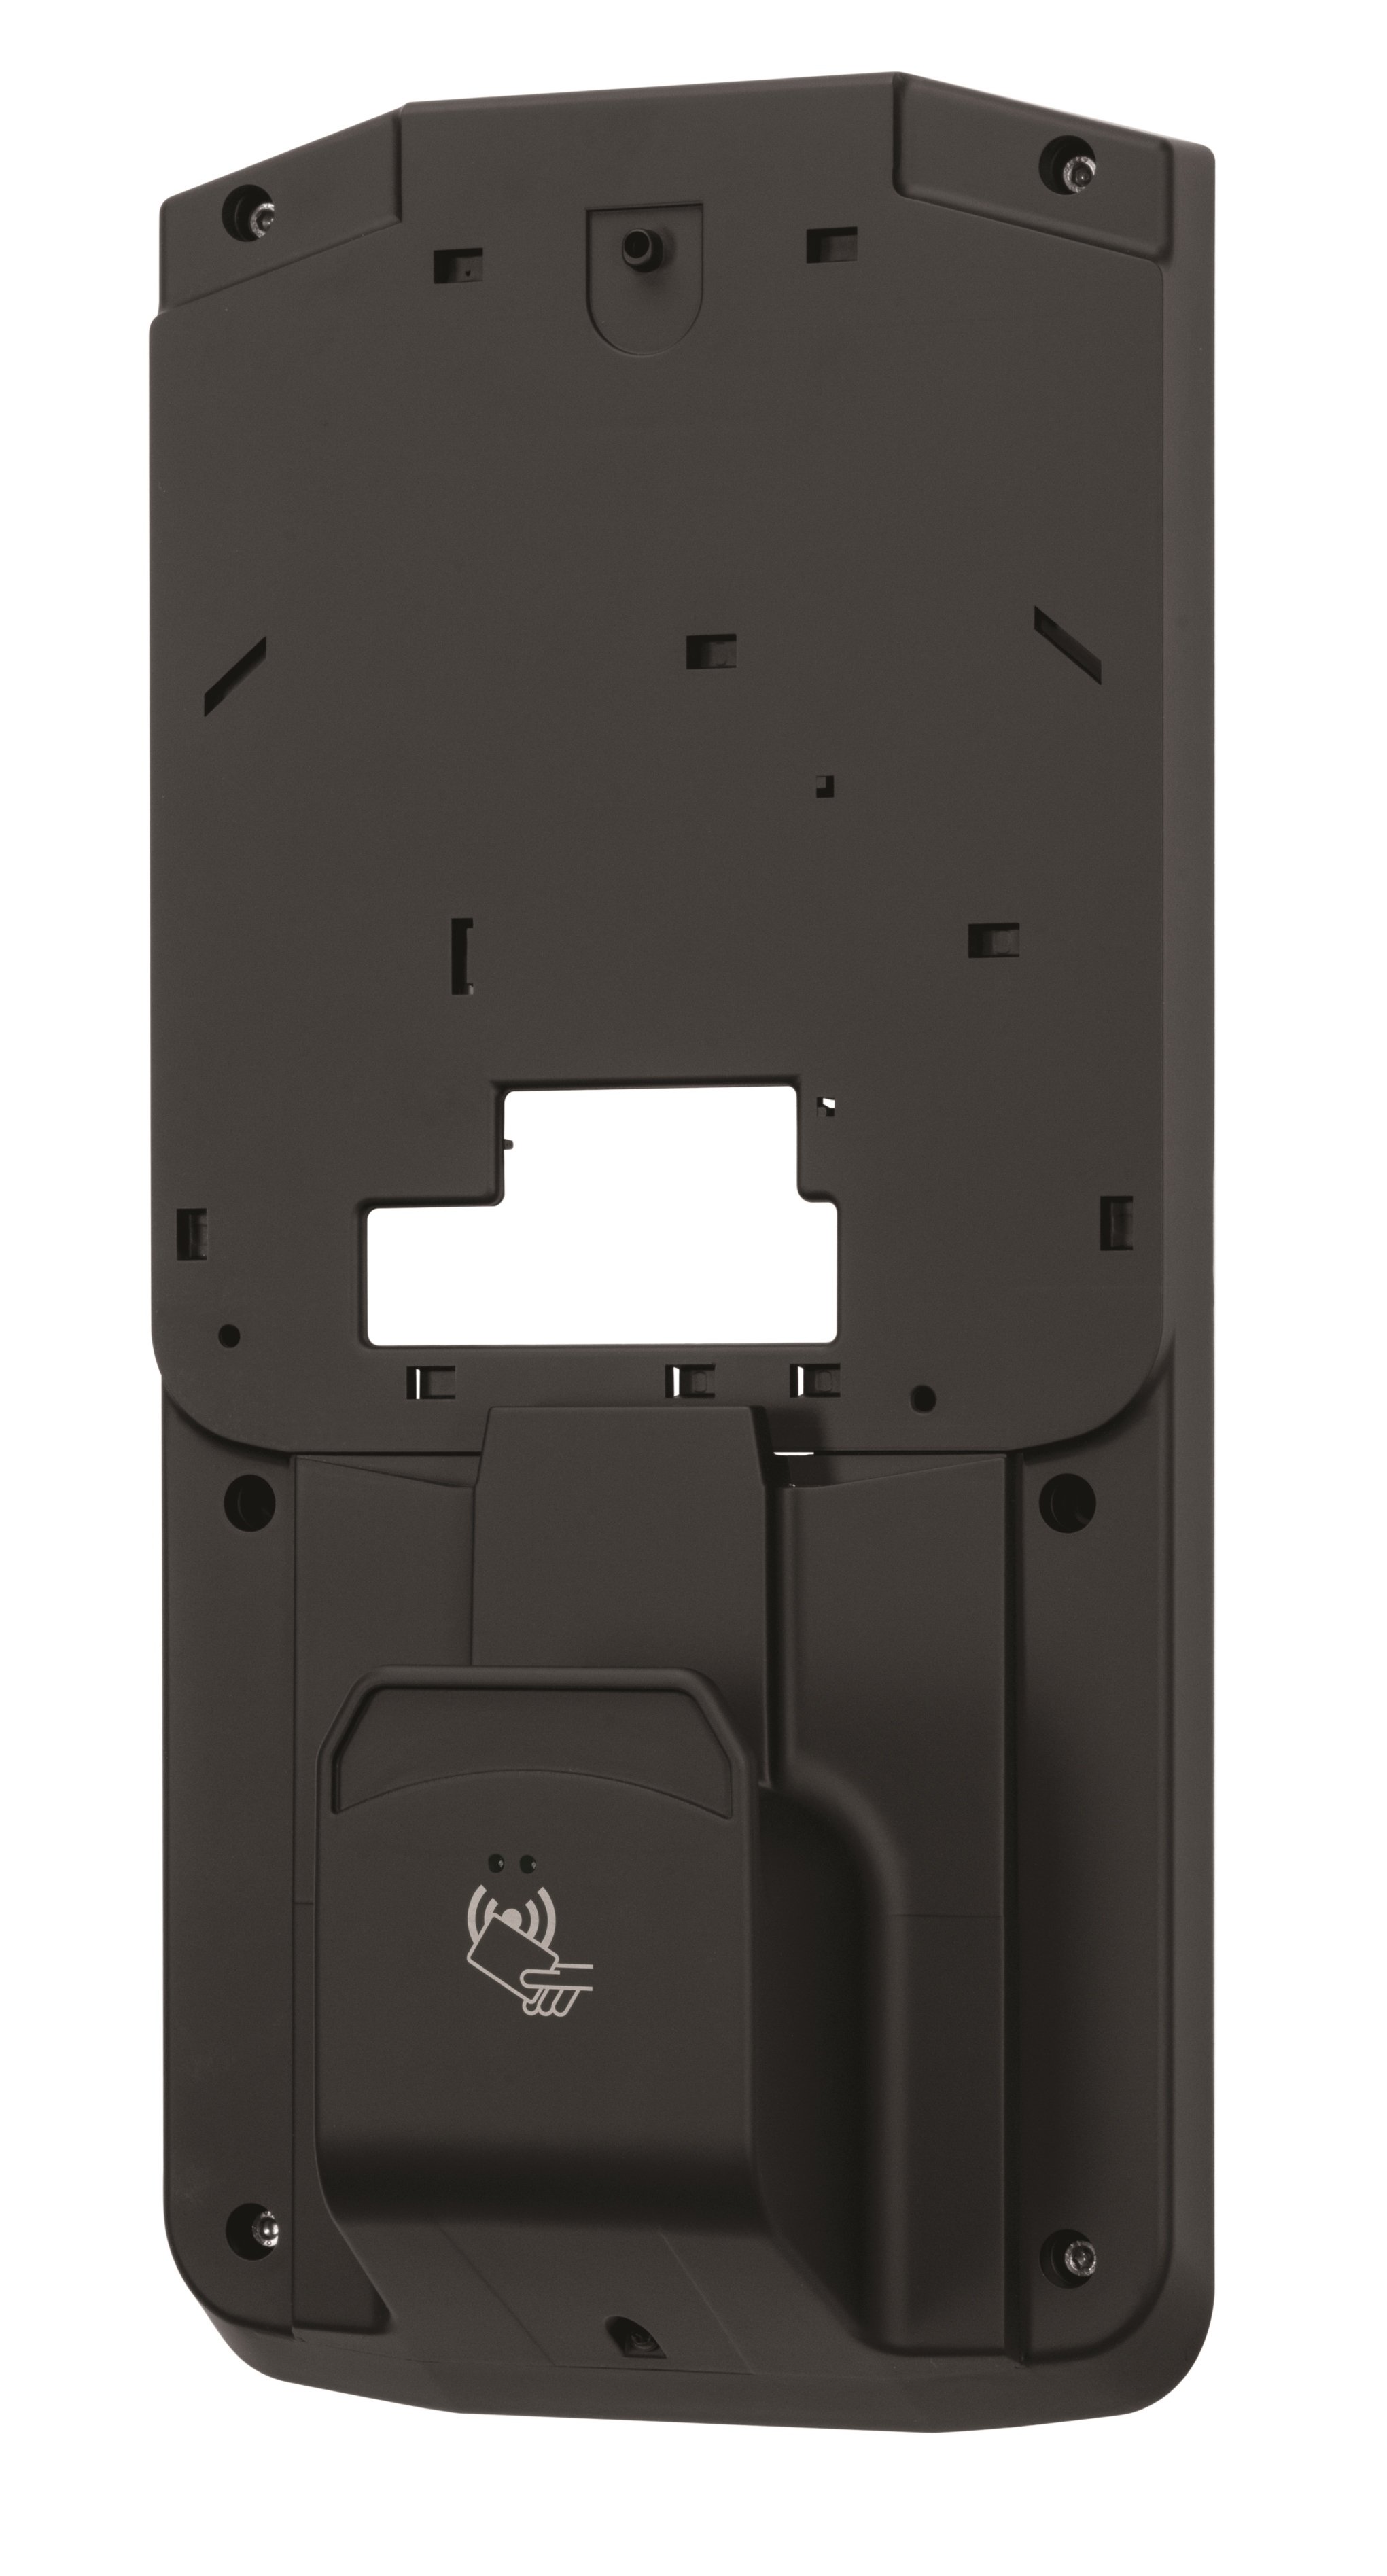 Монтажная панель  для монтажа зарядных станций eMH1 c RFID считывателем карт, RFIDM00